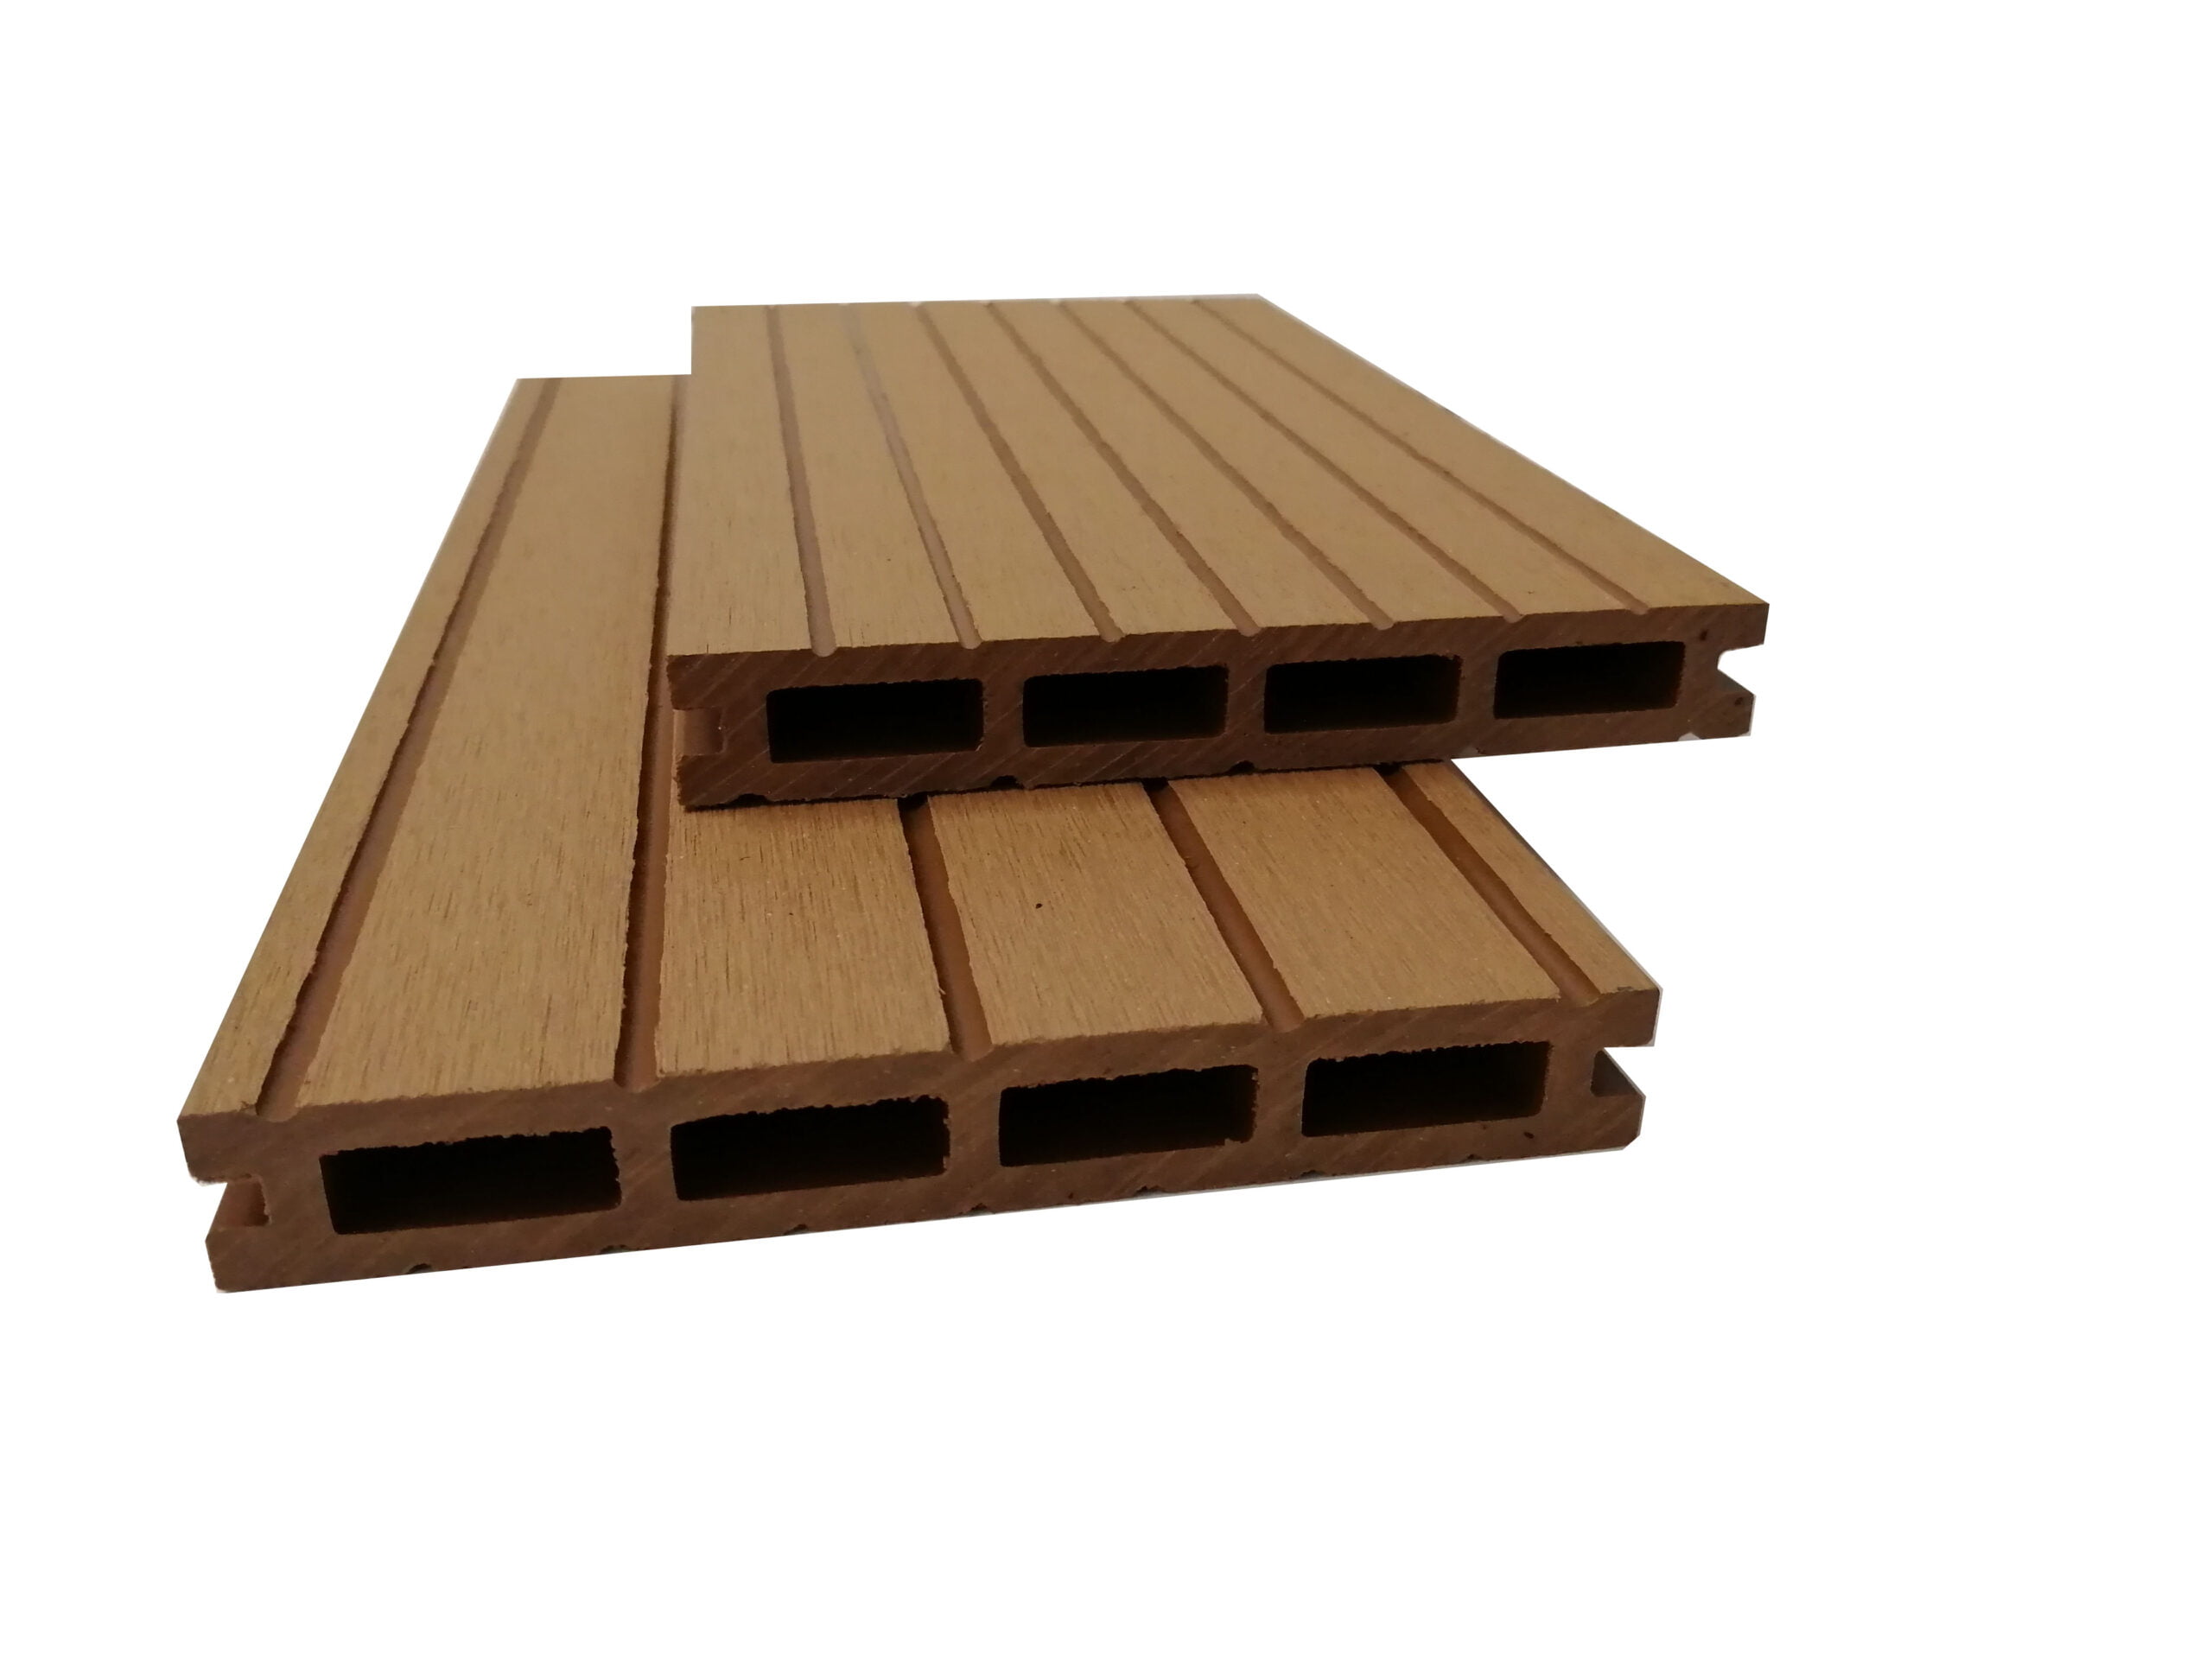 DuoGroove teak wood plastic composite decking 